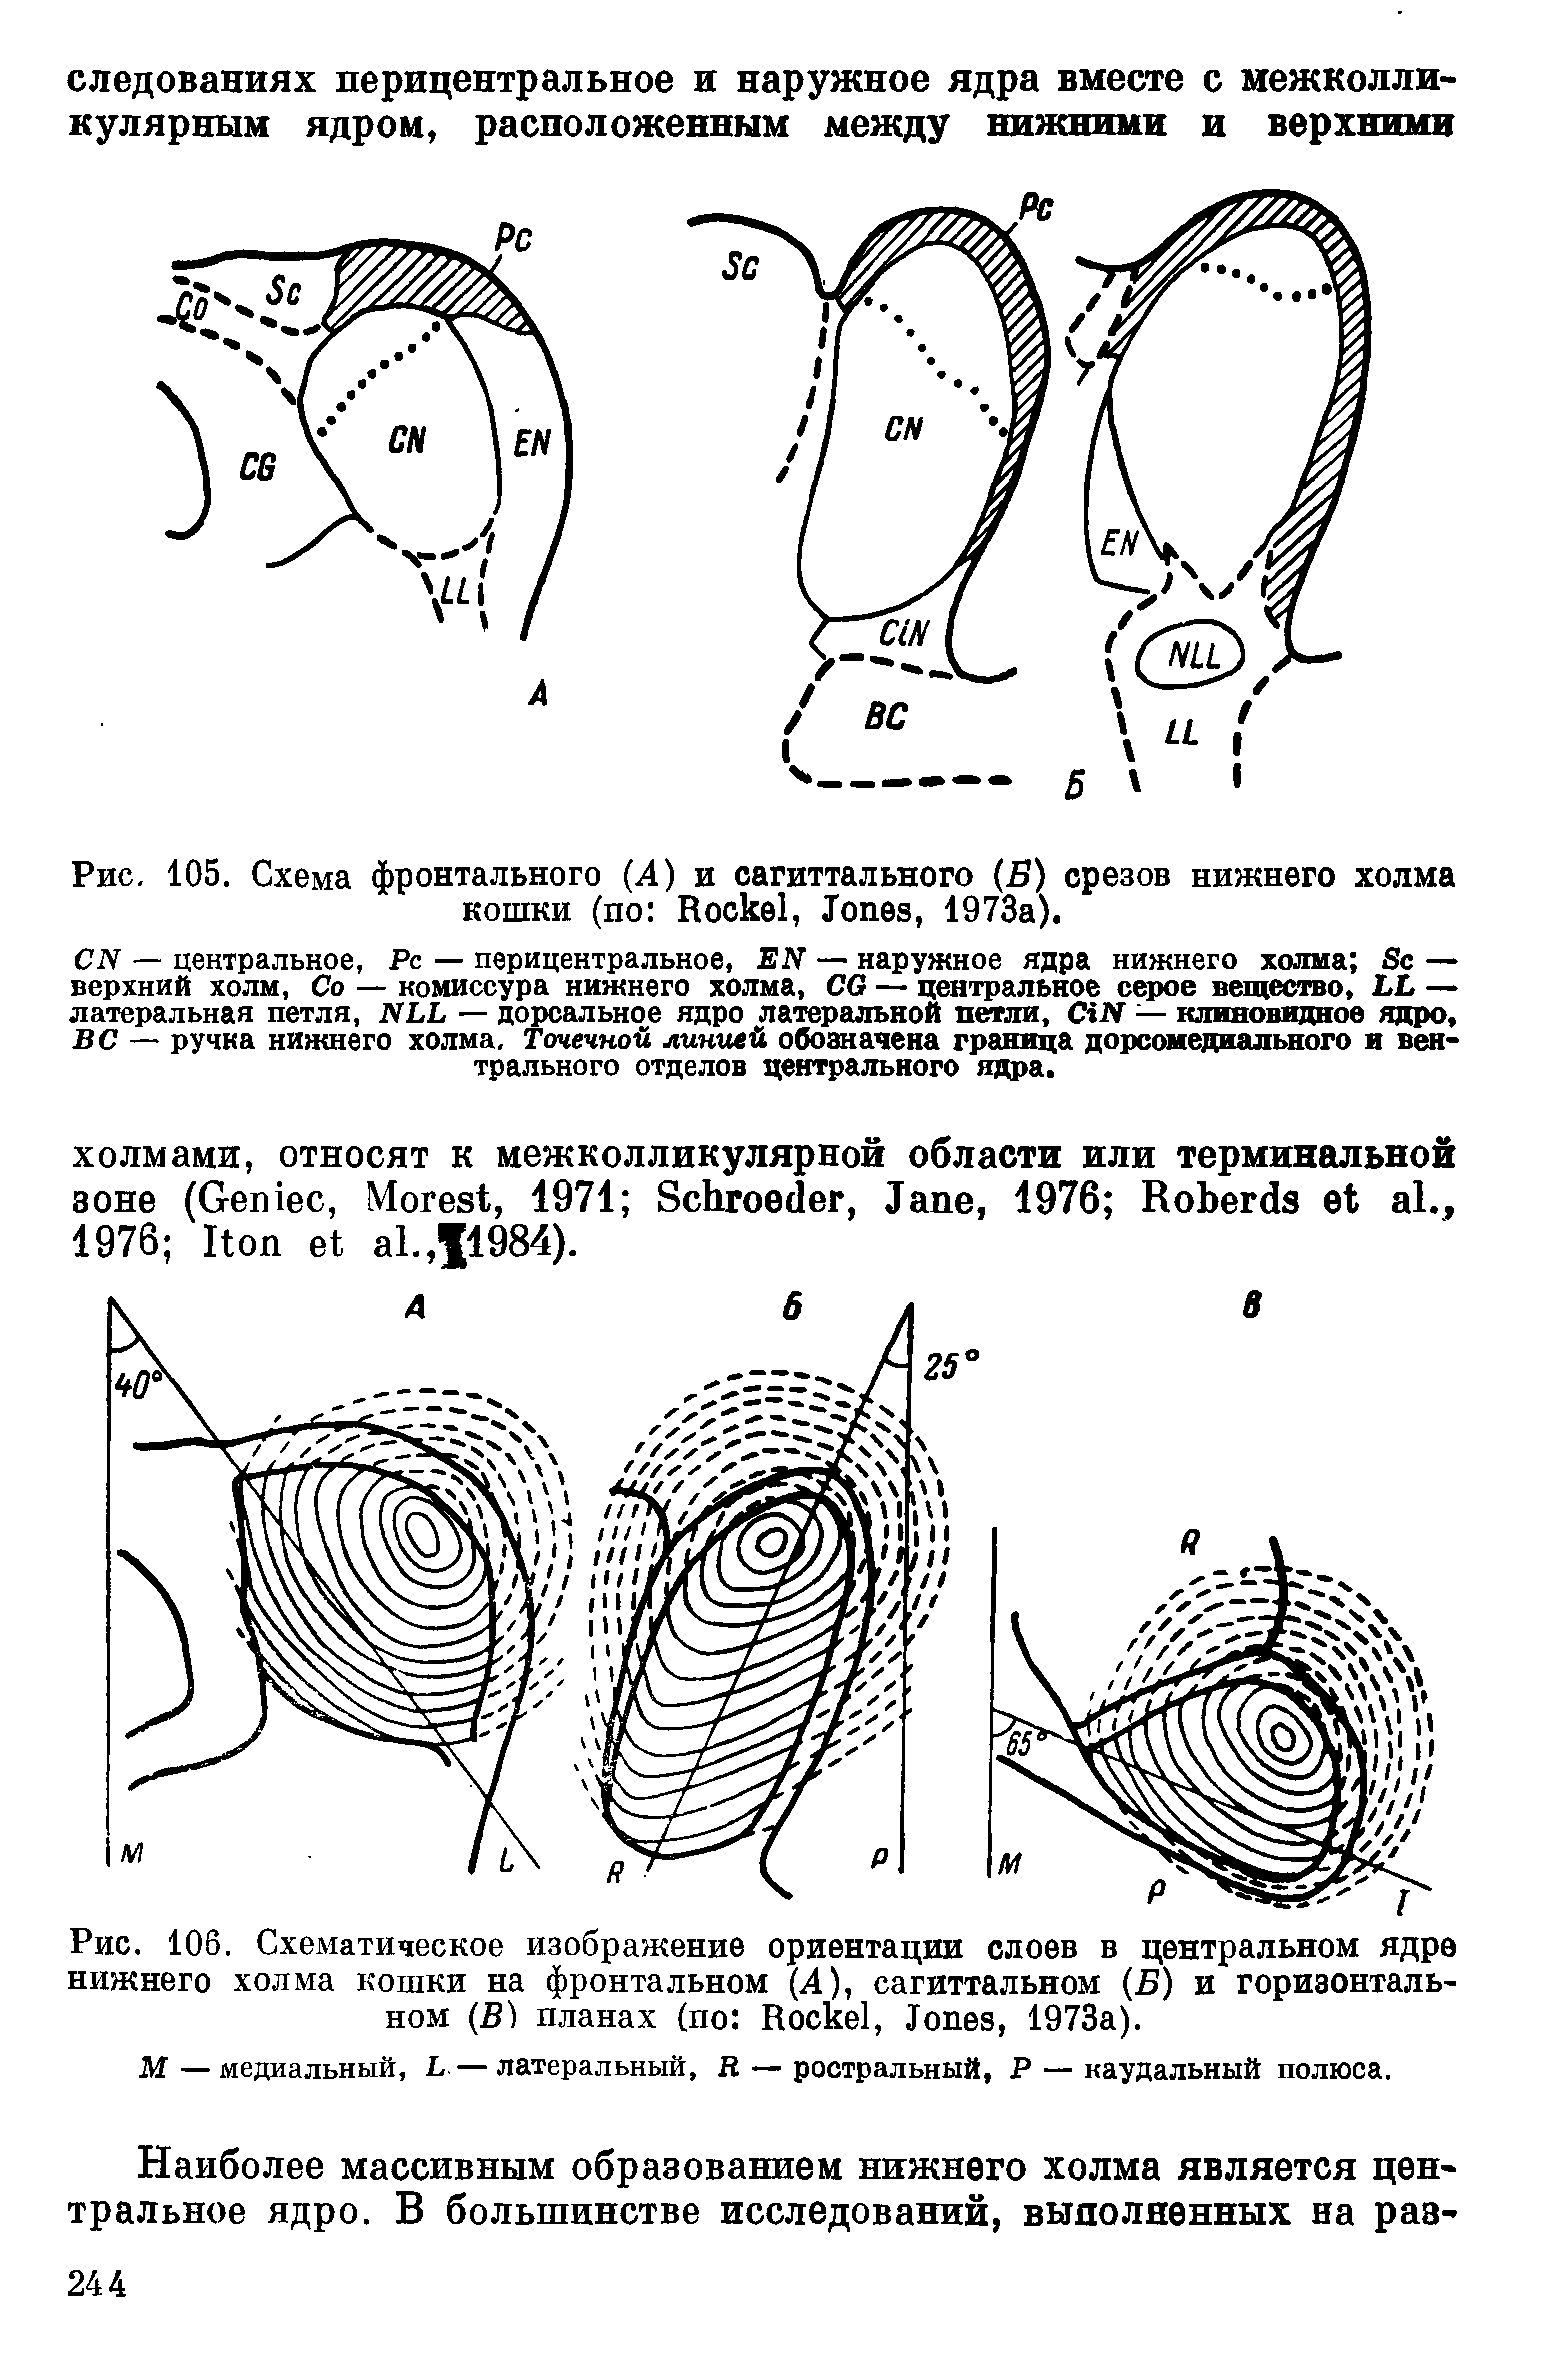 Рис. 106. Схематическое изображение ориентации слоев в центральном ядре нижнего холма кошки на фронтальном (А), сагиттальном (Б) и горизонтальном (В) планах (по R , J , 1973а).